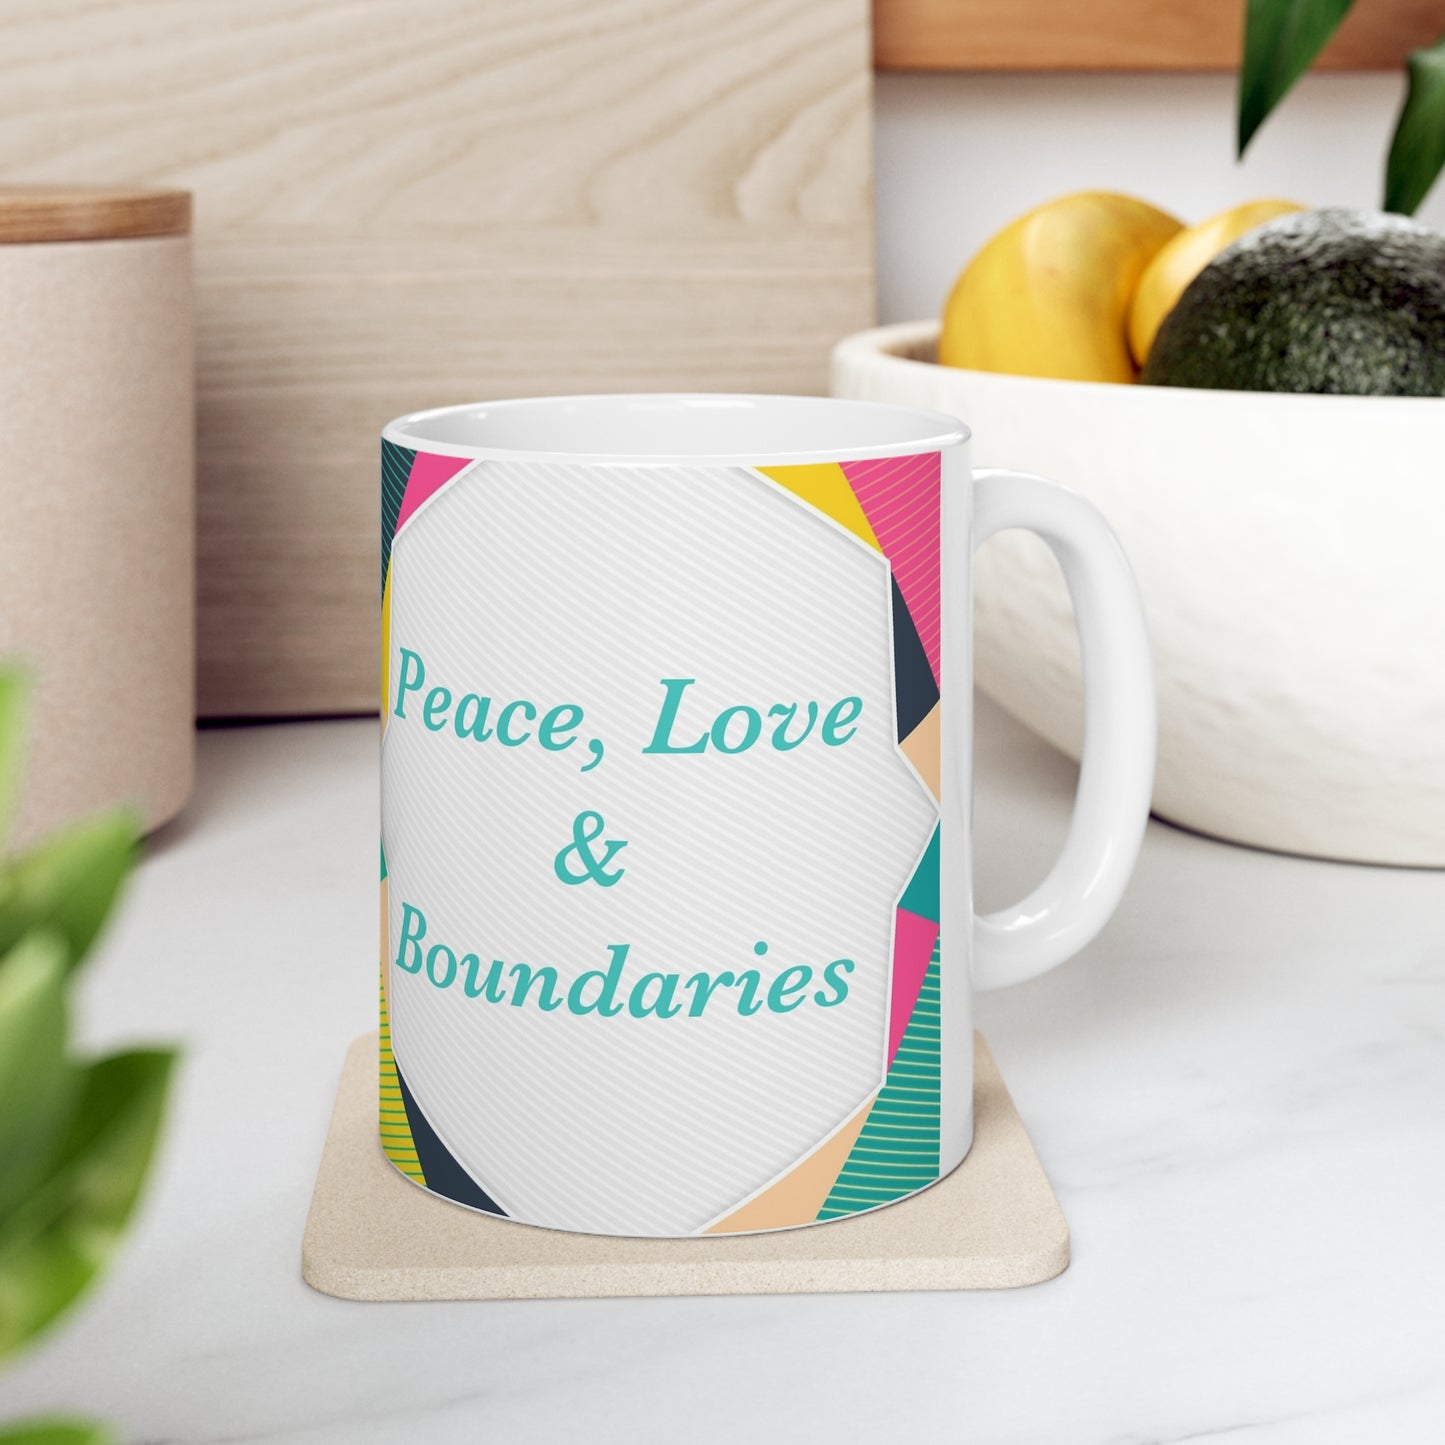 Peace, Love, & Boundaries mug